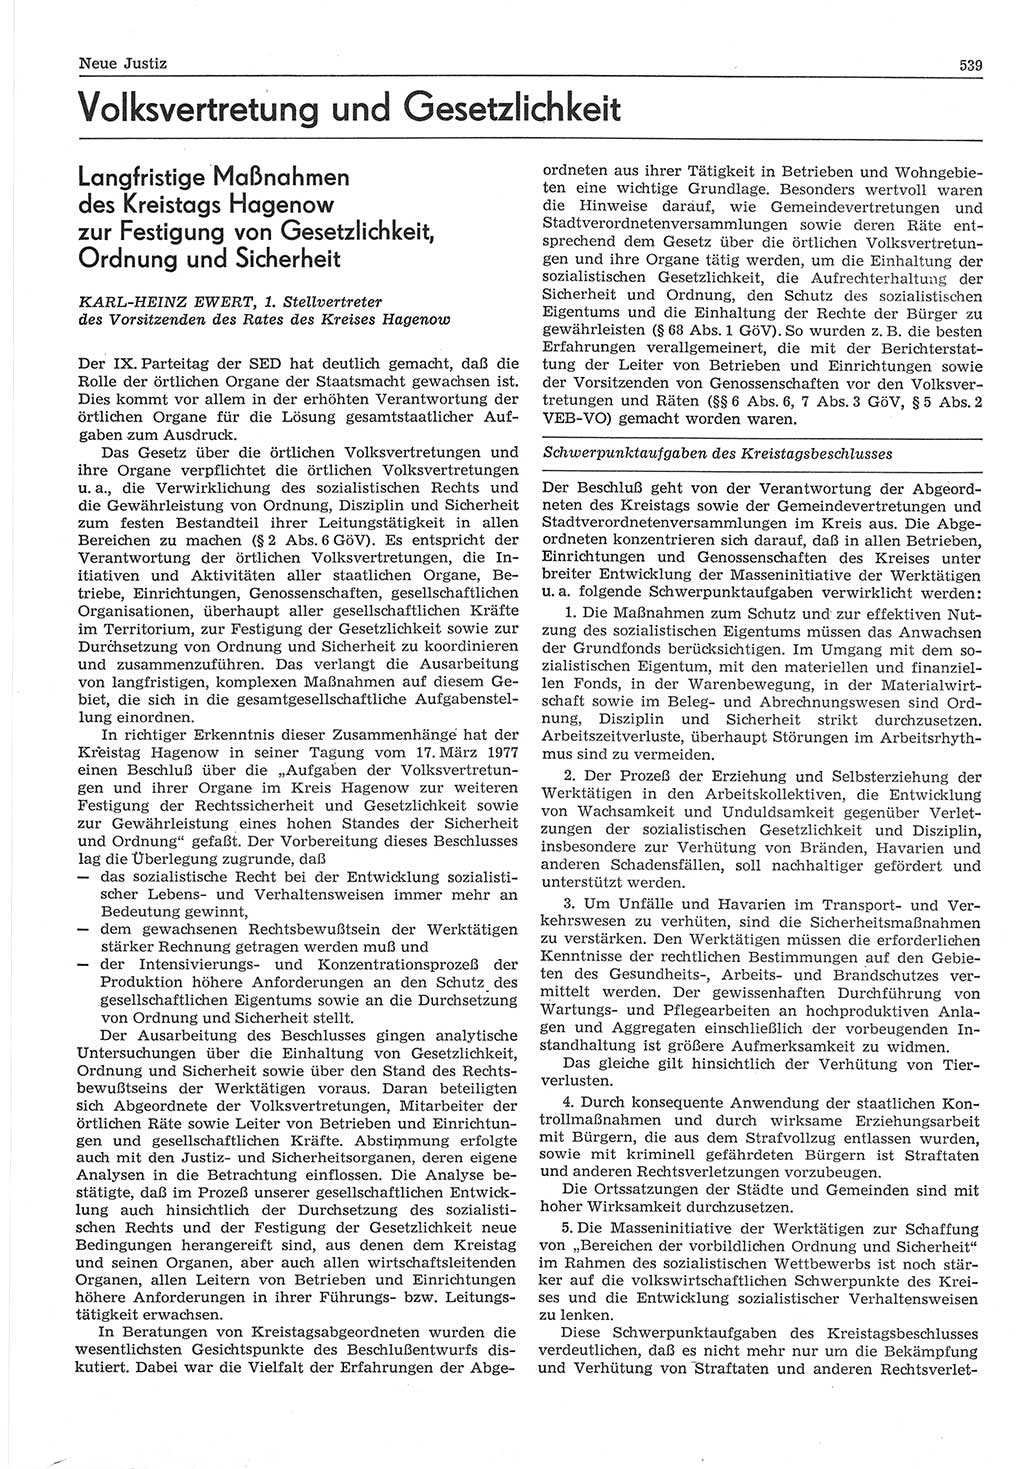 Neue Justiz (NJ), Zeitschrift für Recht und Rechtswissenschaft-Zeitschrift, sozialistisches Recht und Gesetzlichkeit, 31. Jahrgang 1977, Seite 539 (NJ DDR 1977, S. 539)